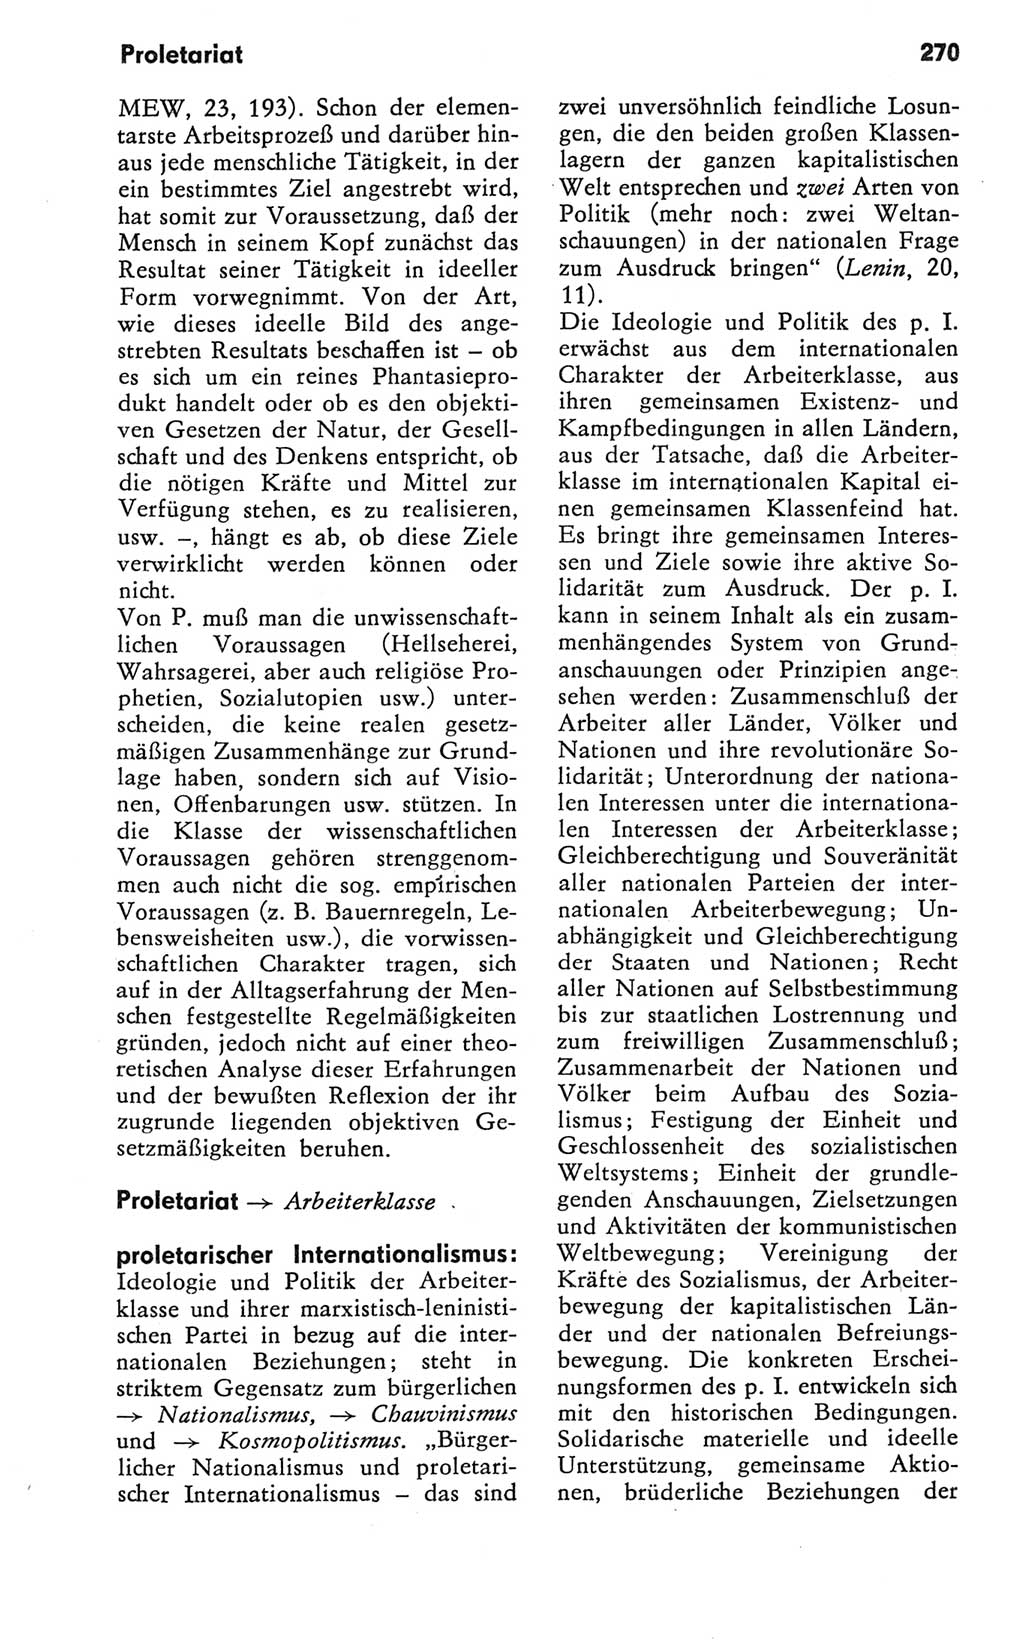 Kleines Wörterbuch der marxistisch-leninistischen Philosophie [Deutsche Demokratische Republik (DDR)] 1981, Seite 270 (Kl. Wb. ML Phil. DDR 1981, S. 270)